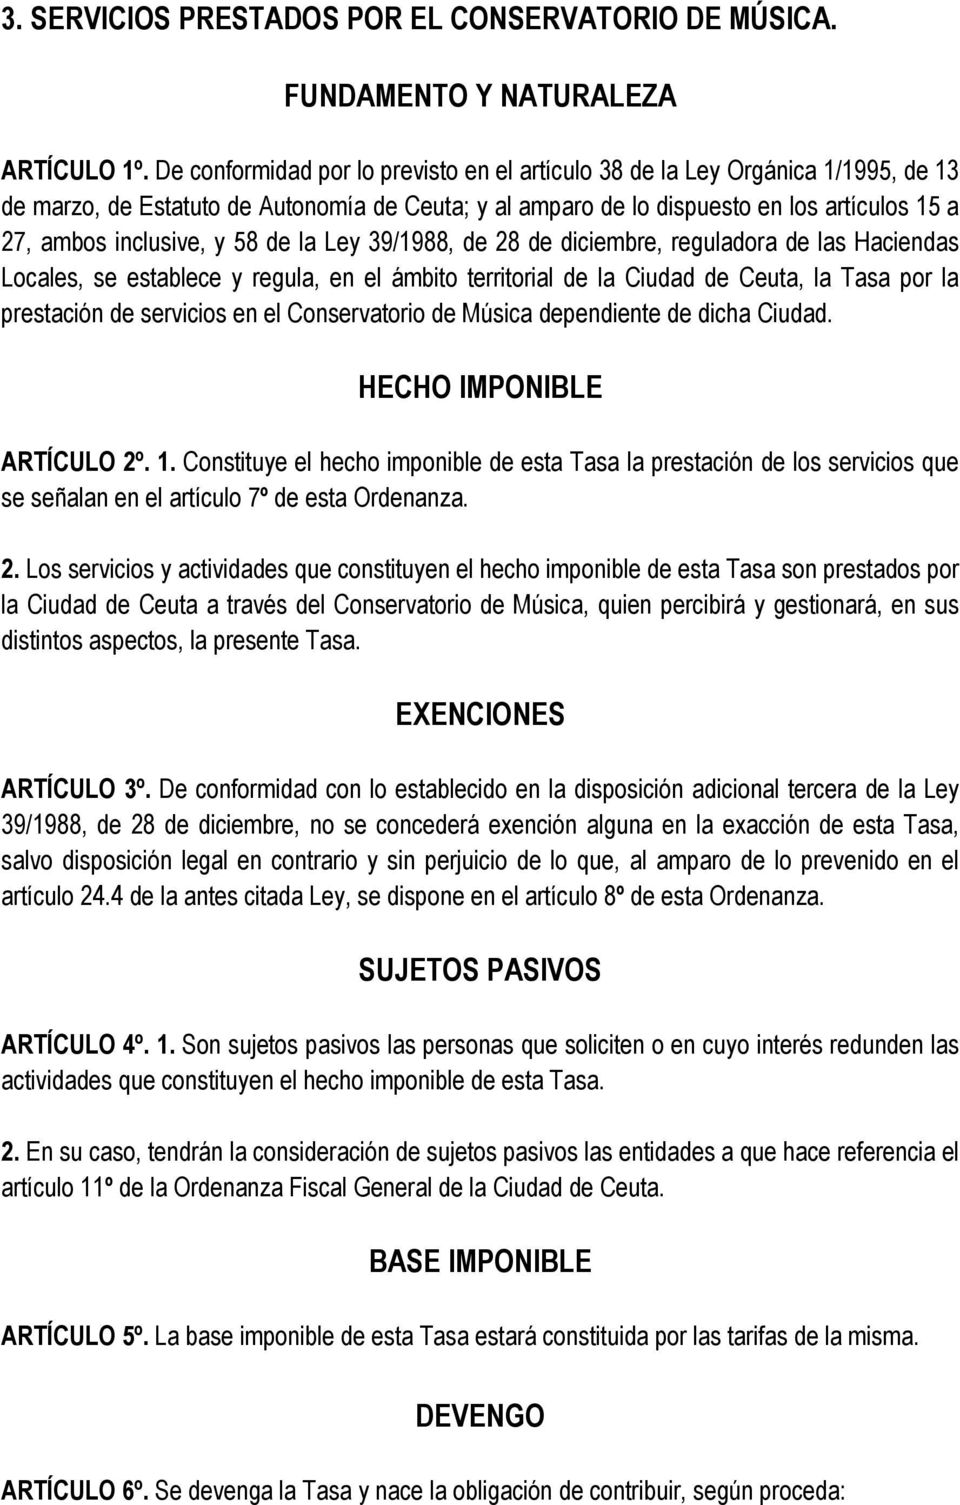 58 de la Ley 39/1988, de 28 de diciembre, reguladora de las Haciendas Locales, se establece y regula, en el ámbito territorial de la Ciudad de Ceuta, la Tasa por la prestación de servicios en el